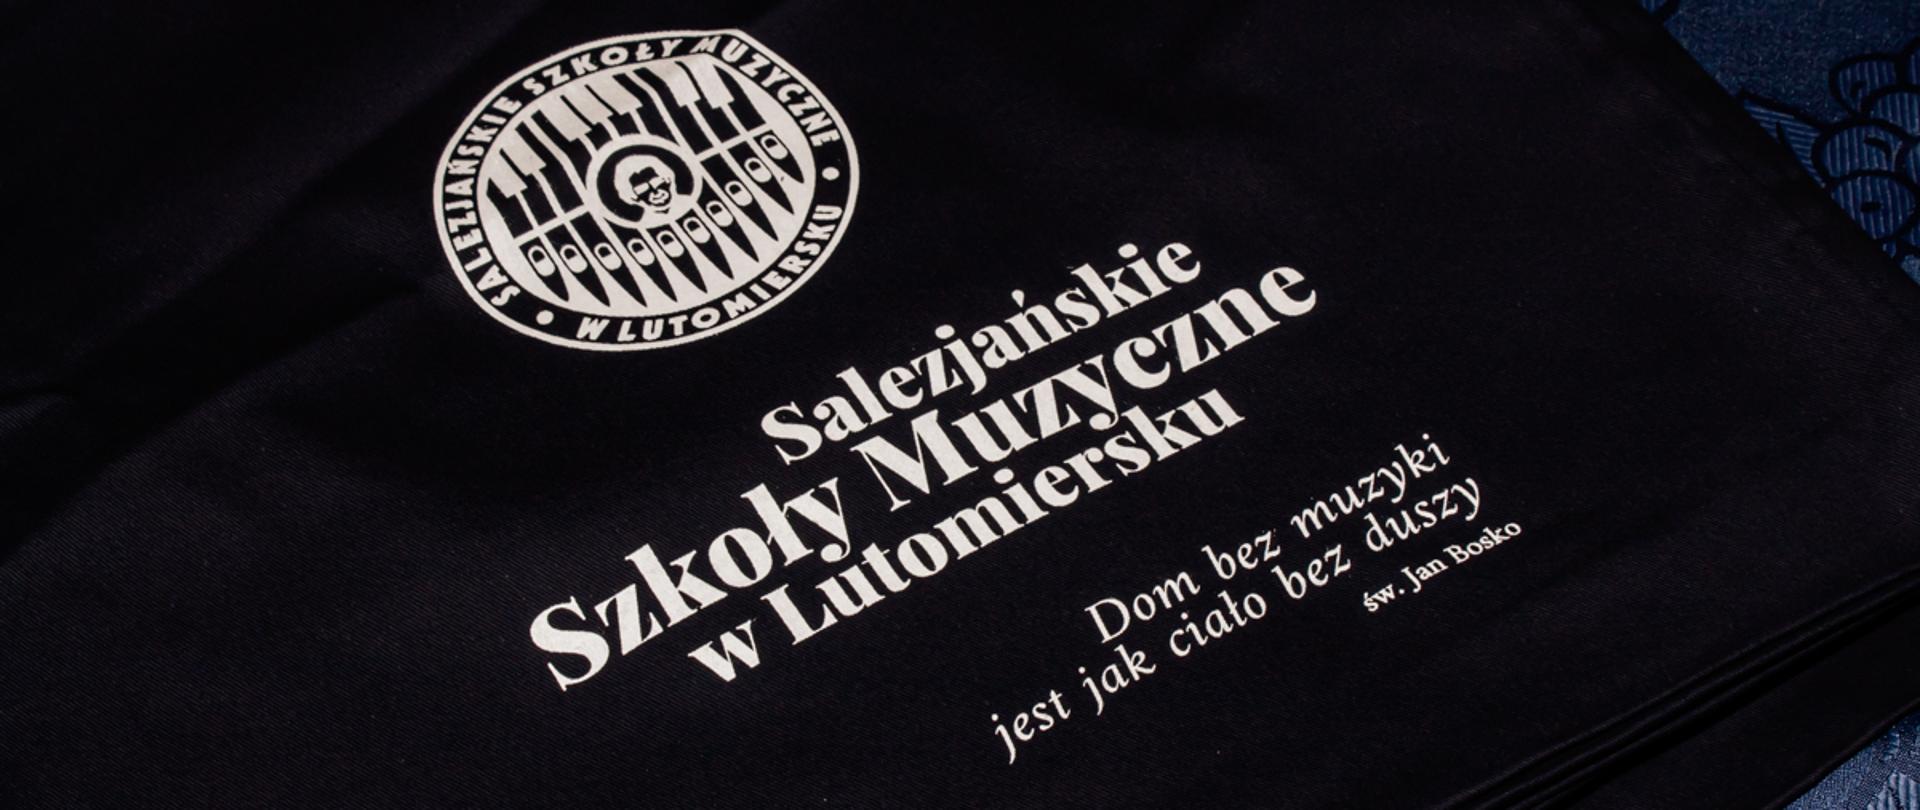 Jubileusz 25-lecia Salezjańskiej Szkoły Muzyczne w Lutomiersku